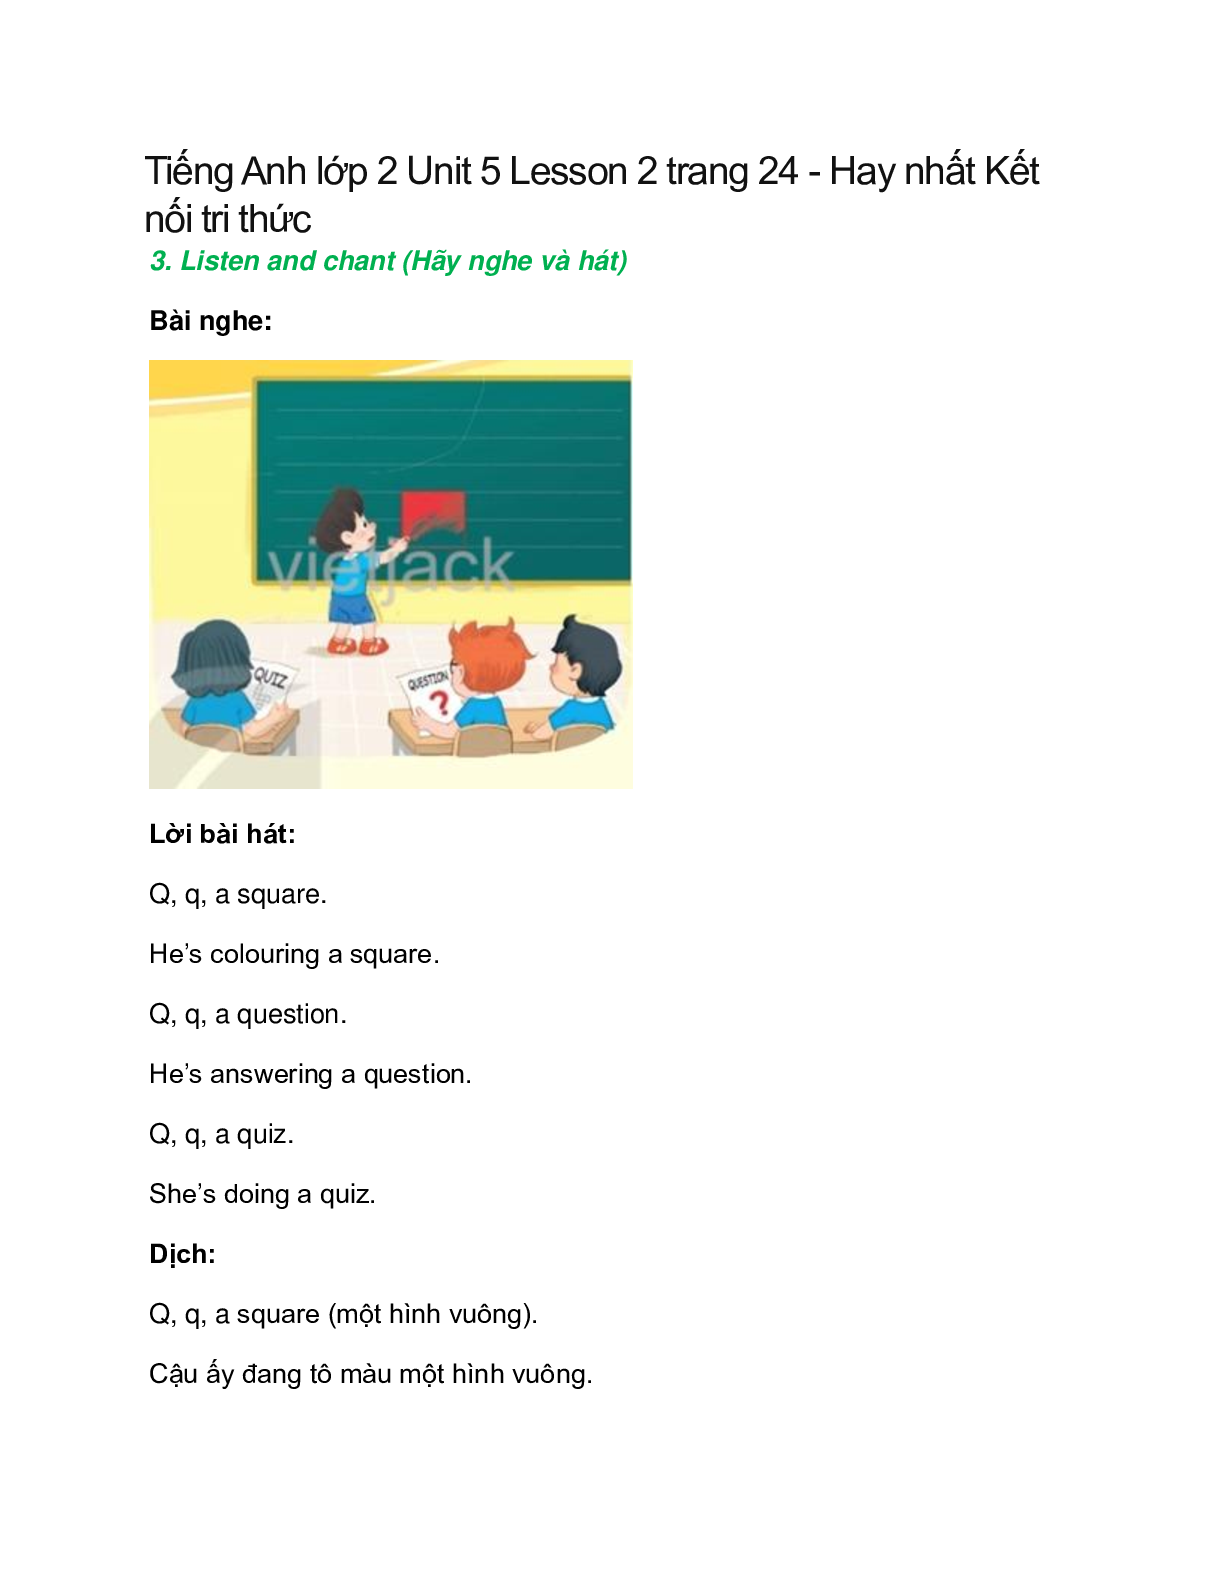 Tiếng Anh lớp 2 Unit 5 Lesson 2 trang 24 – Kết nối tri thức (trang 1)